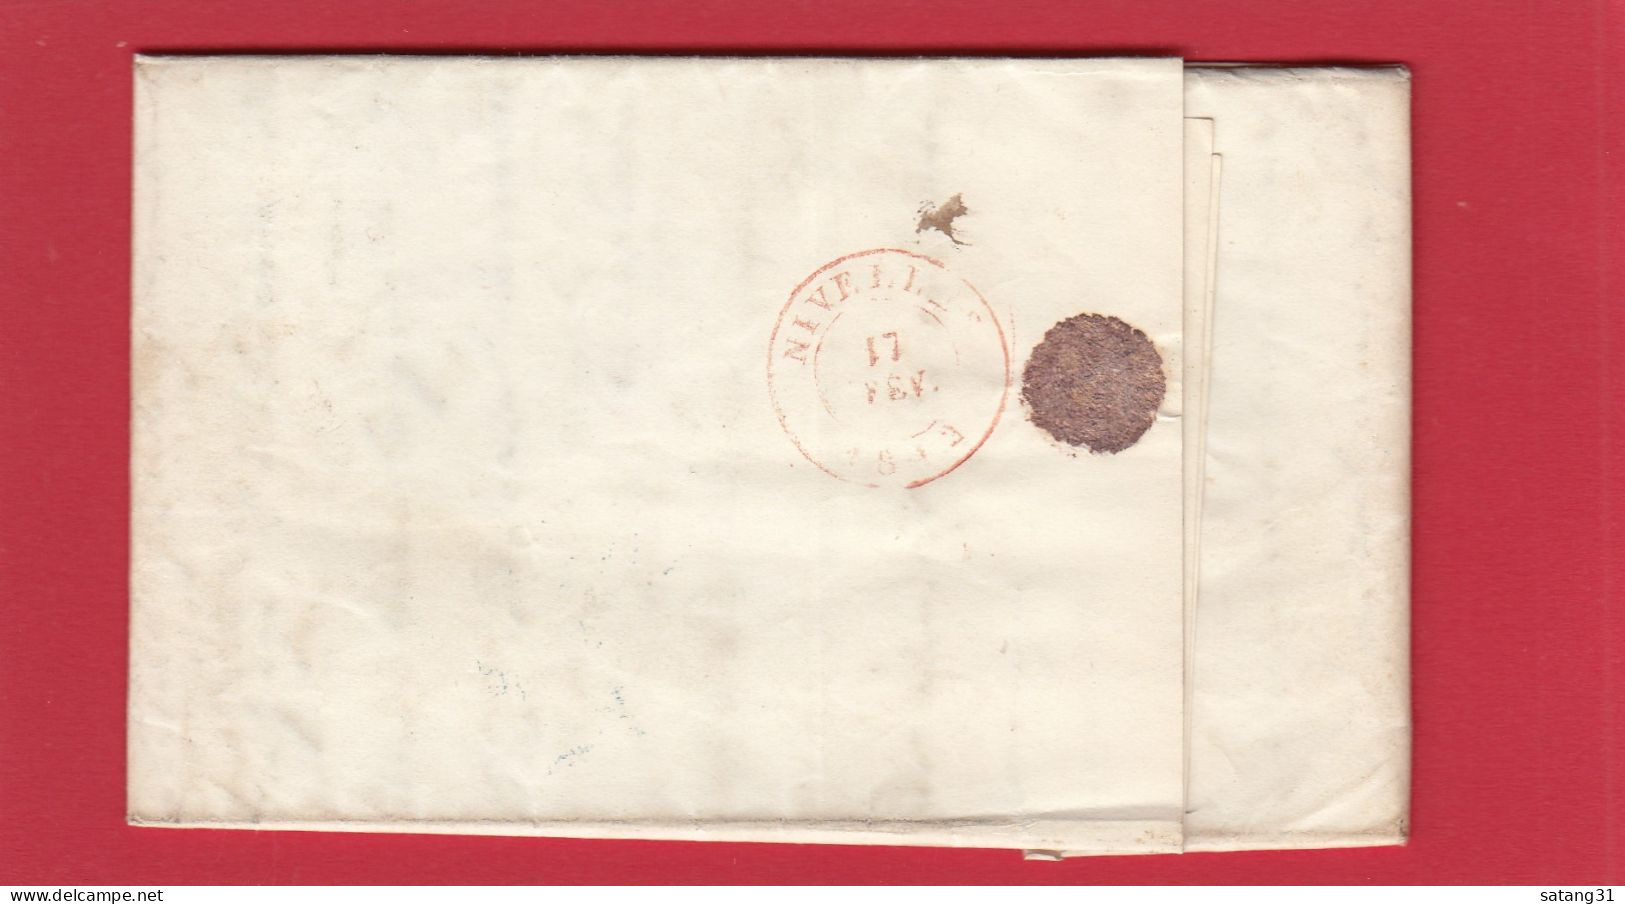 LETTRE DE BRUXELLES POUR UN JUGE A NIVELLES,1842. - 1830-1849 (Belgique Indépendante)